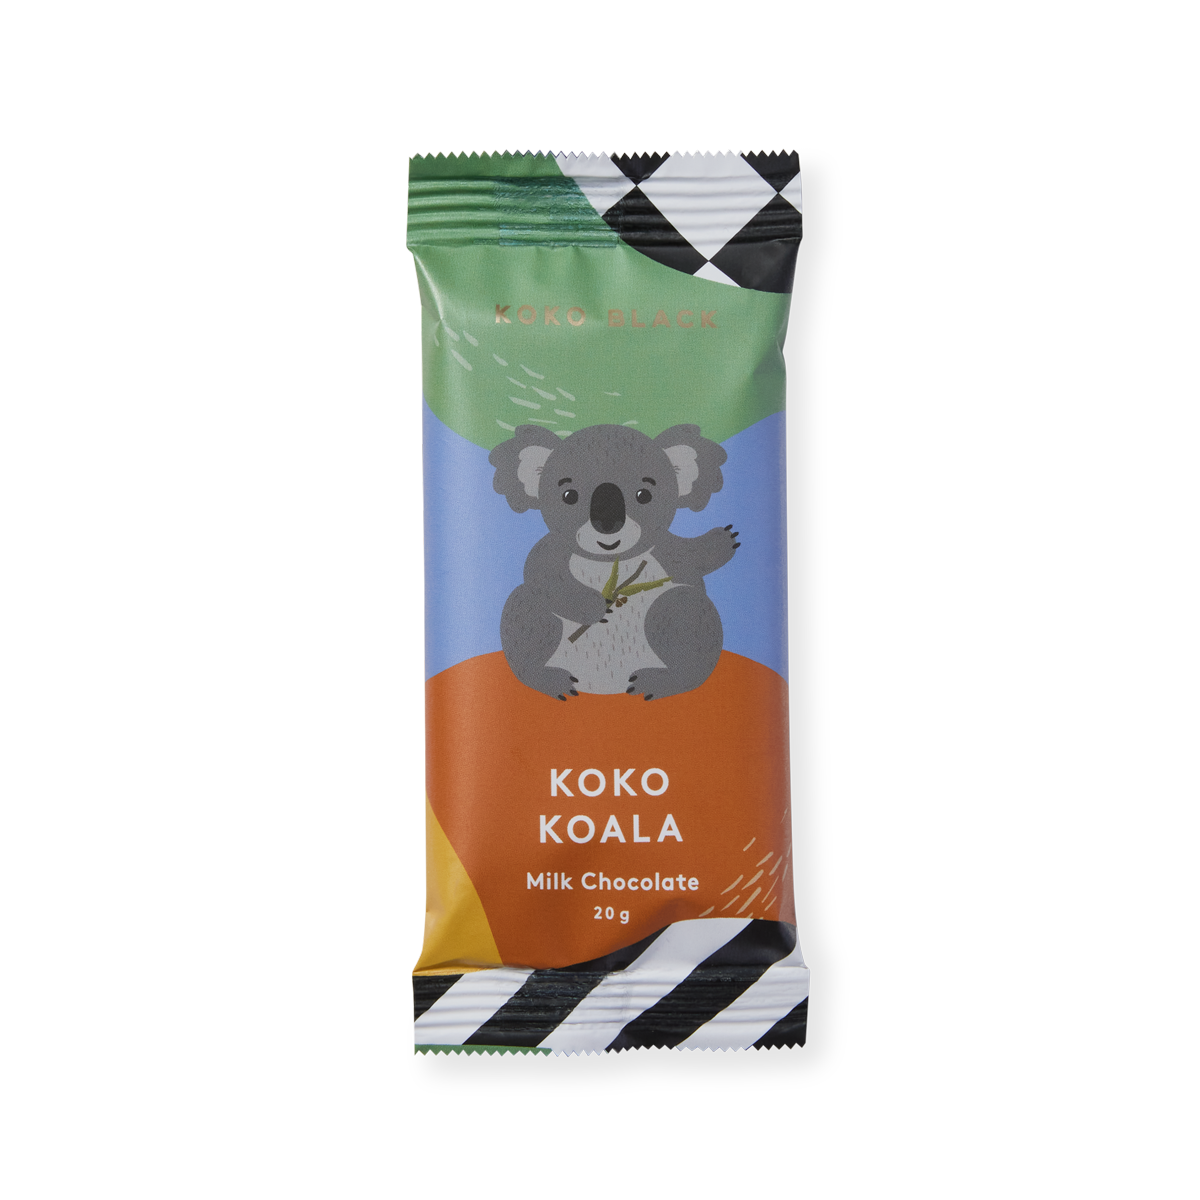 Koko Australian Critters Collection